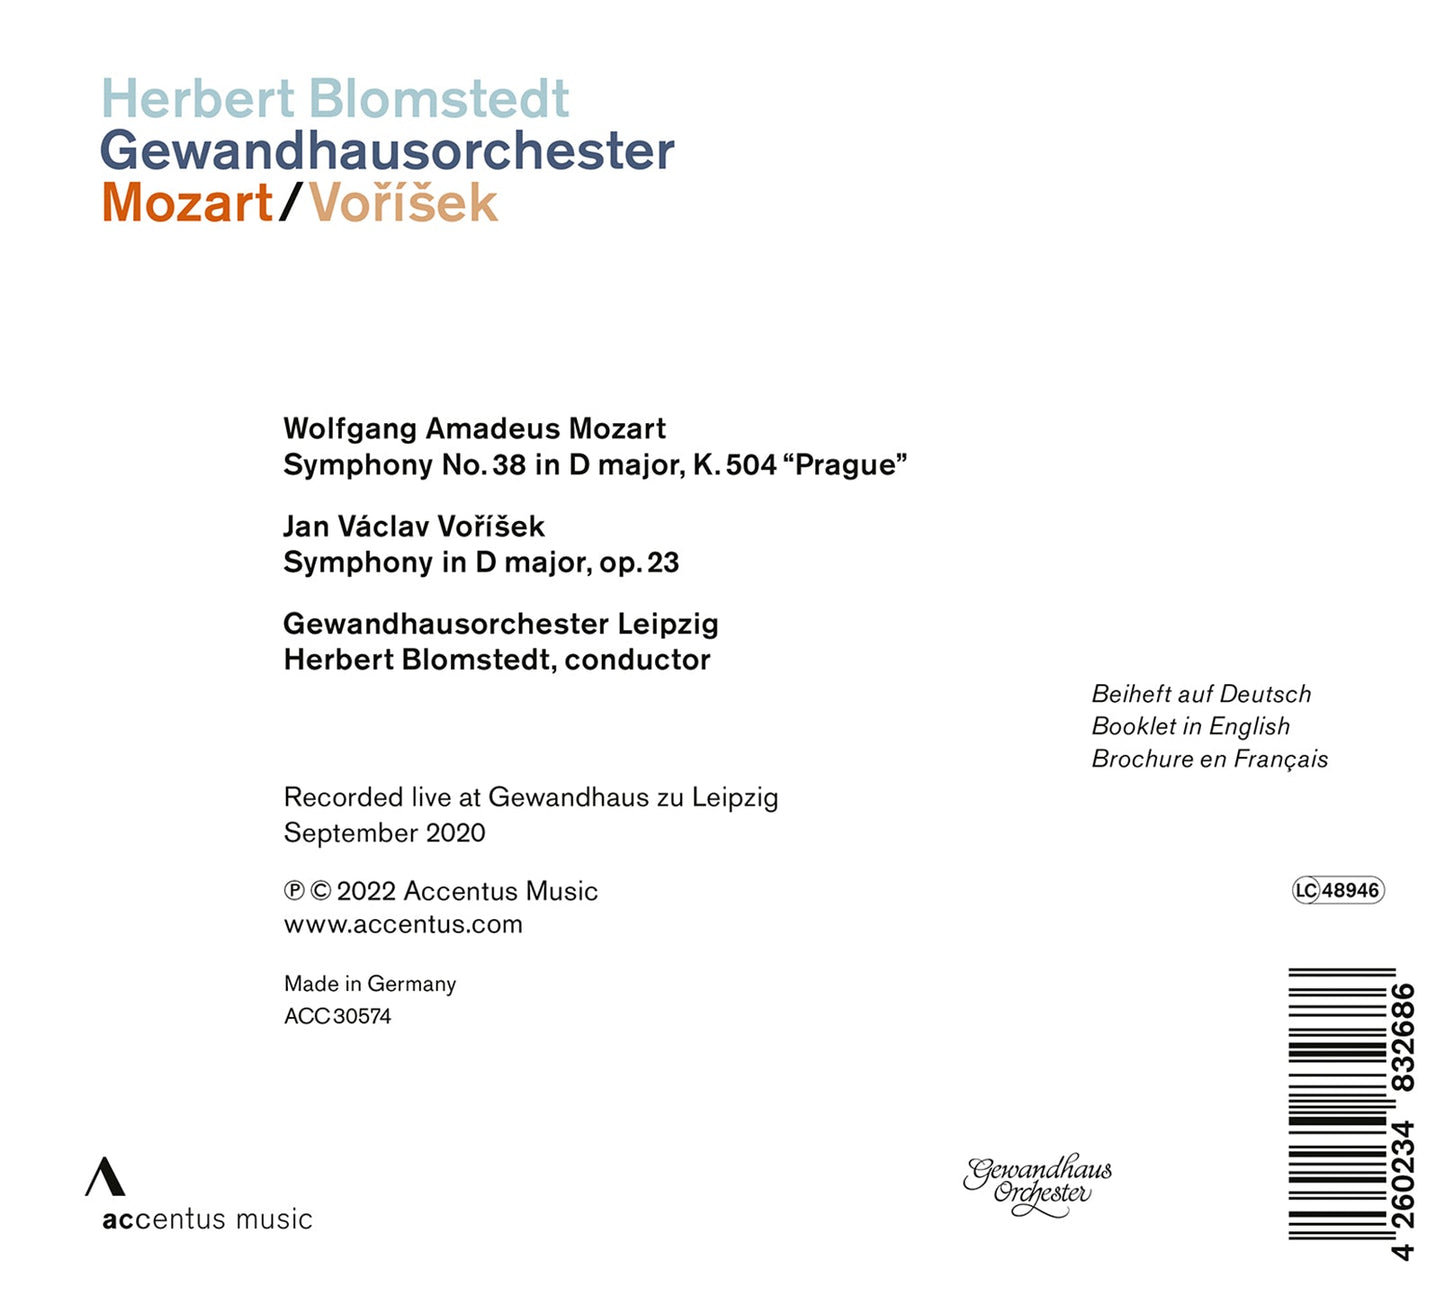 Mozart & Vořisek: Herbert Blomstedt, Gewandhausorchester Lei